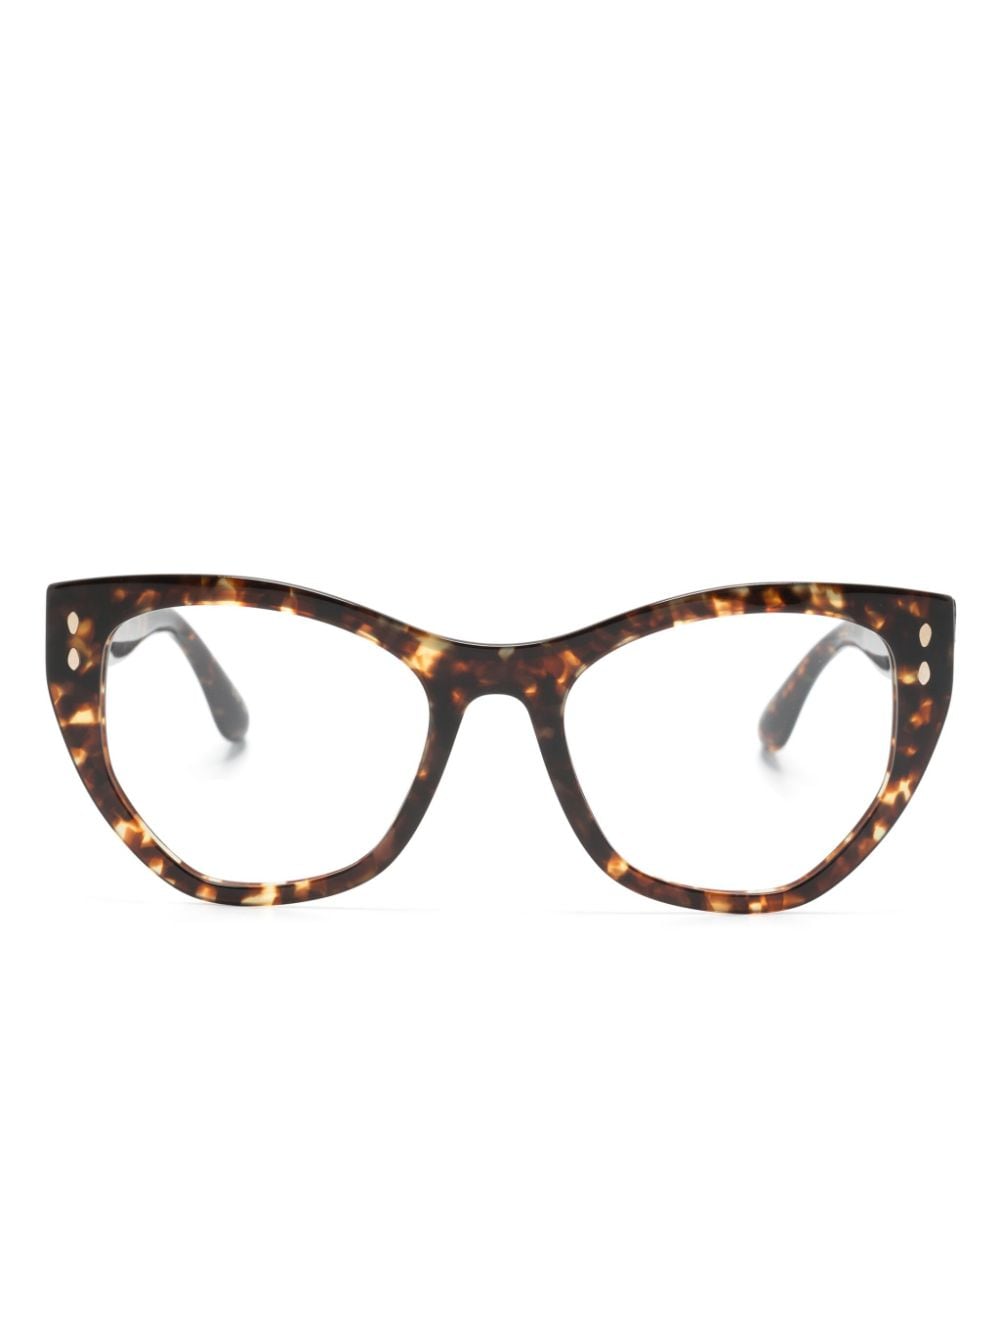 Isabel Marant Eyewear Tortoiseshell Butterfly-frame Glasses In Brown